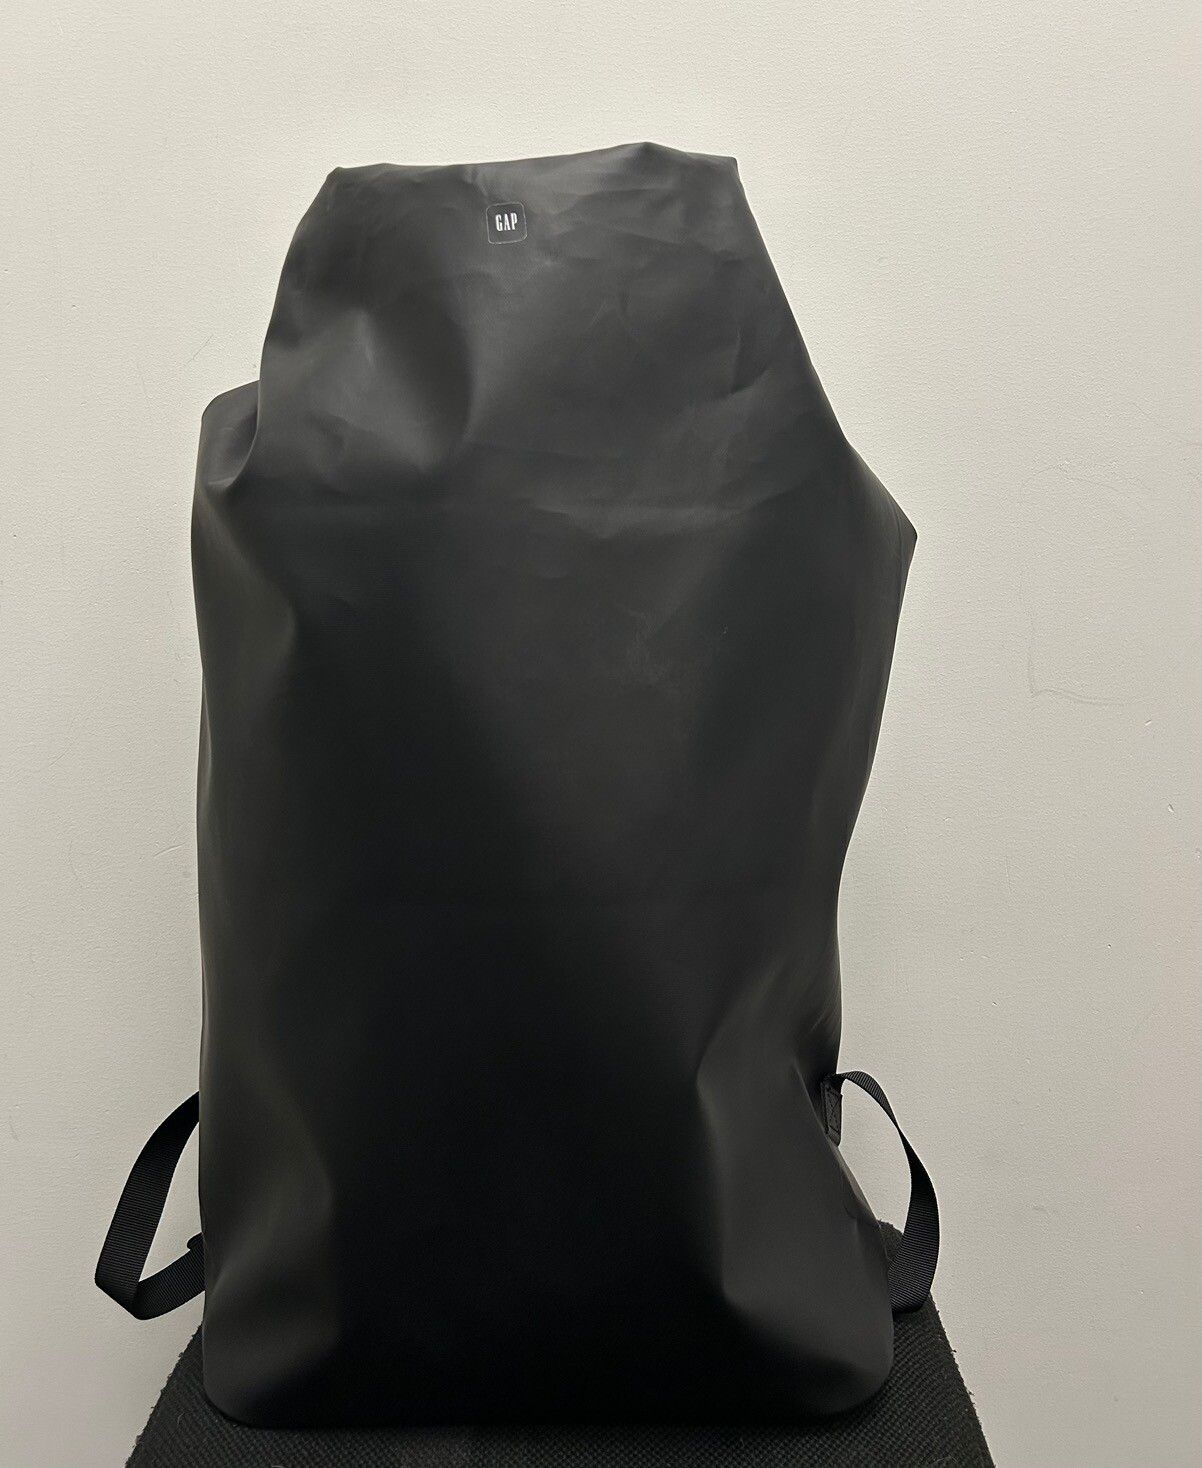 Pre-owned Balenciaga X Gap Yeezy Gap Dry Bag In Black